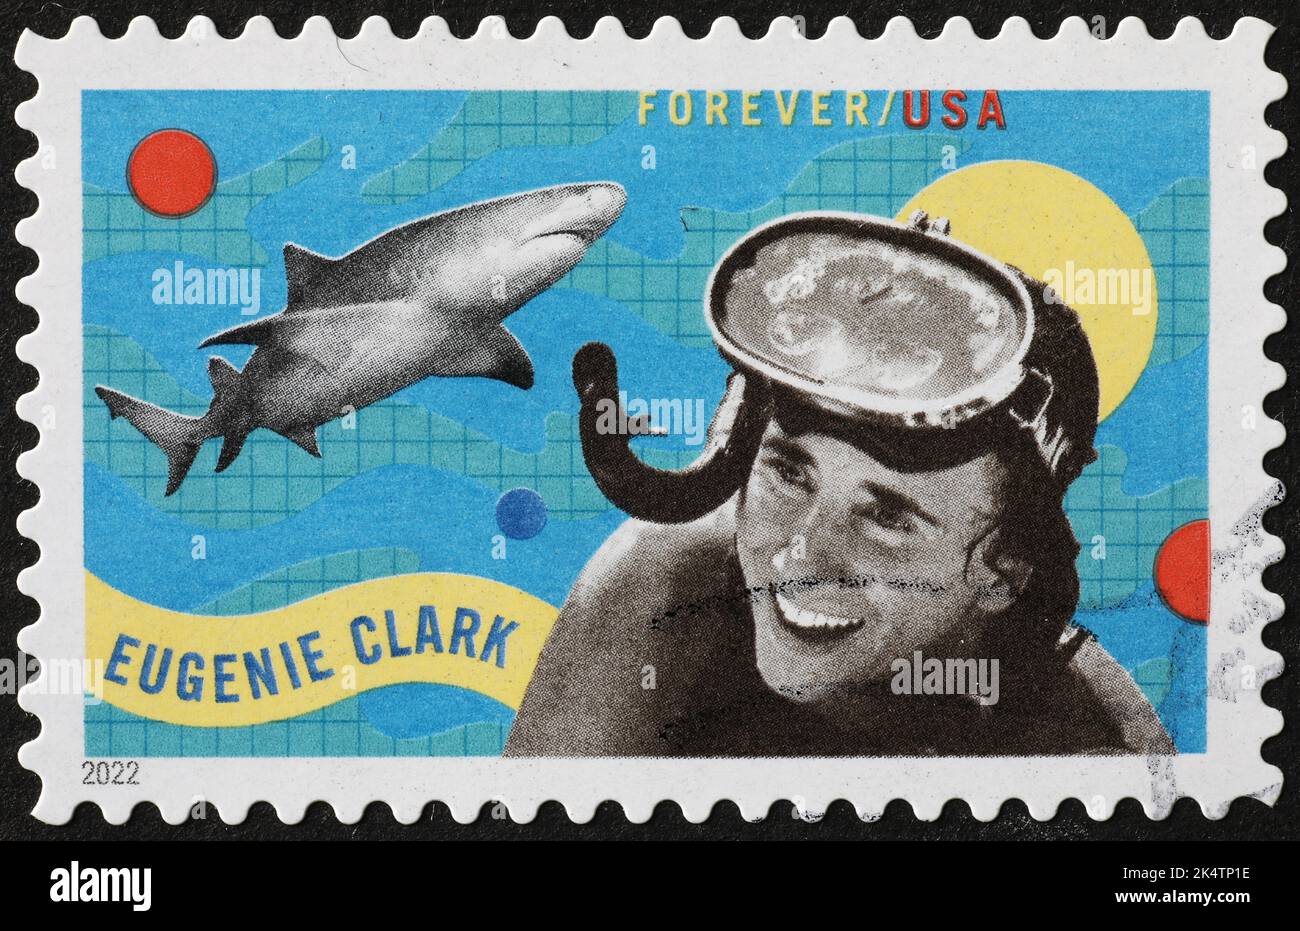 Eugenie Clark sur le timbre-poste américain Banque D'Images